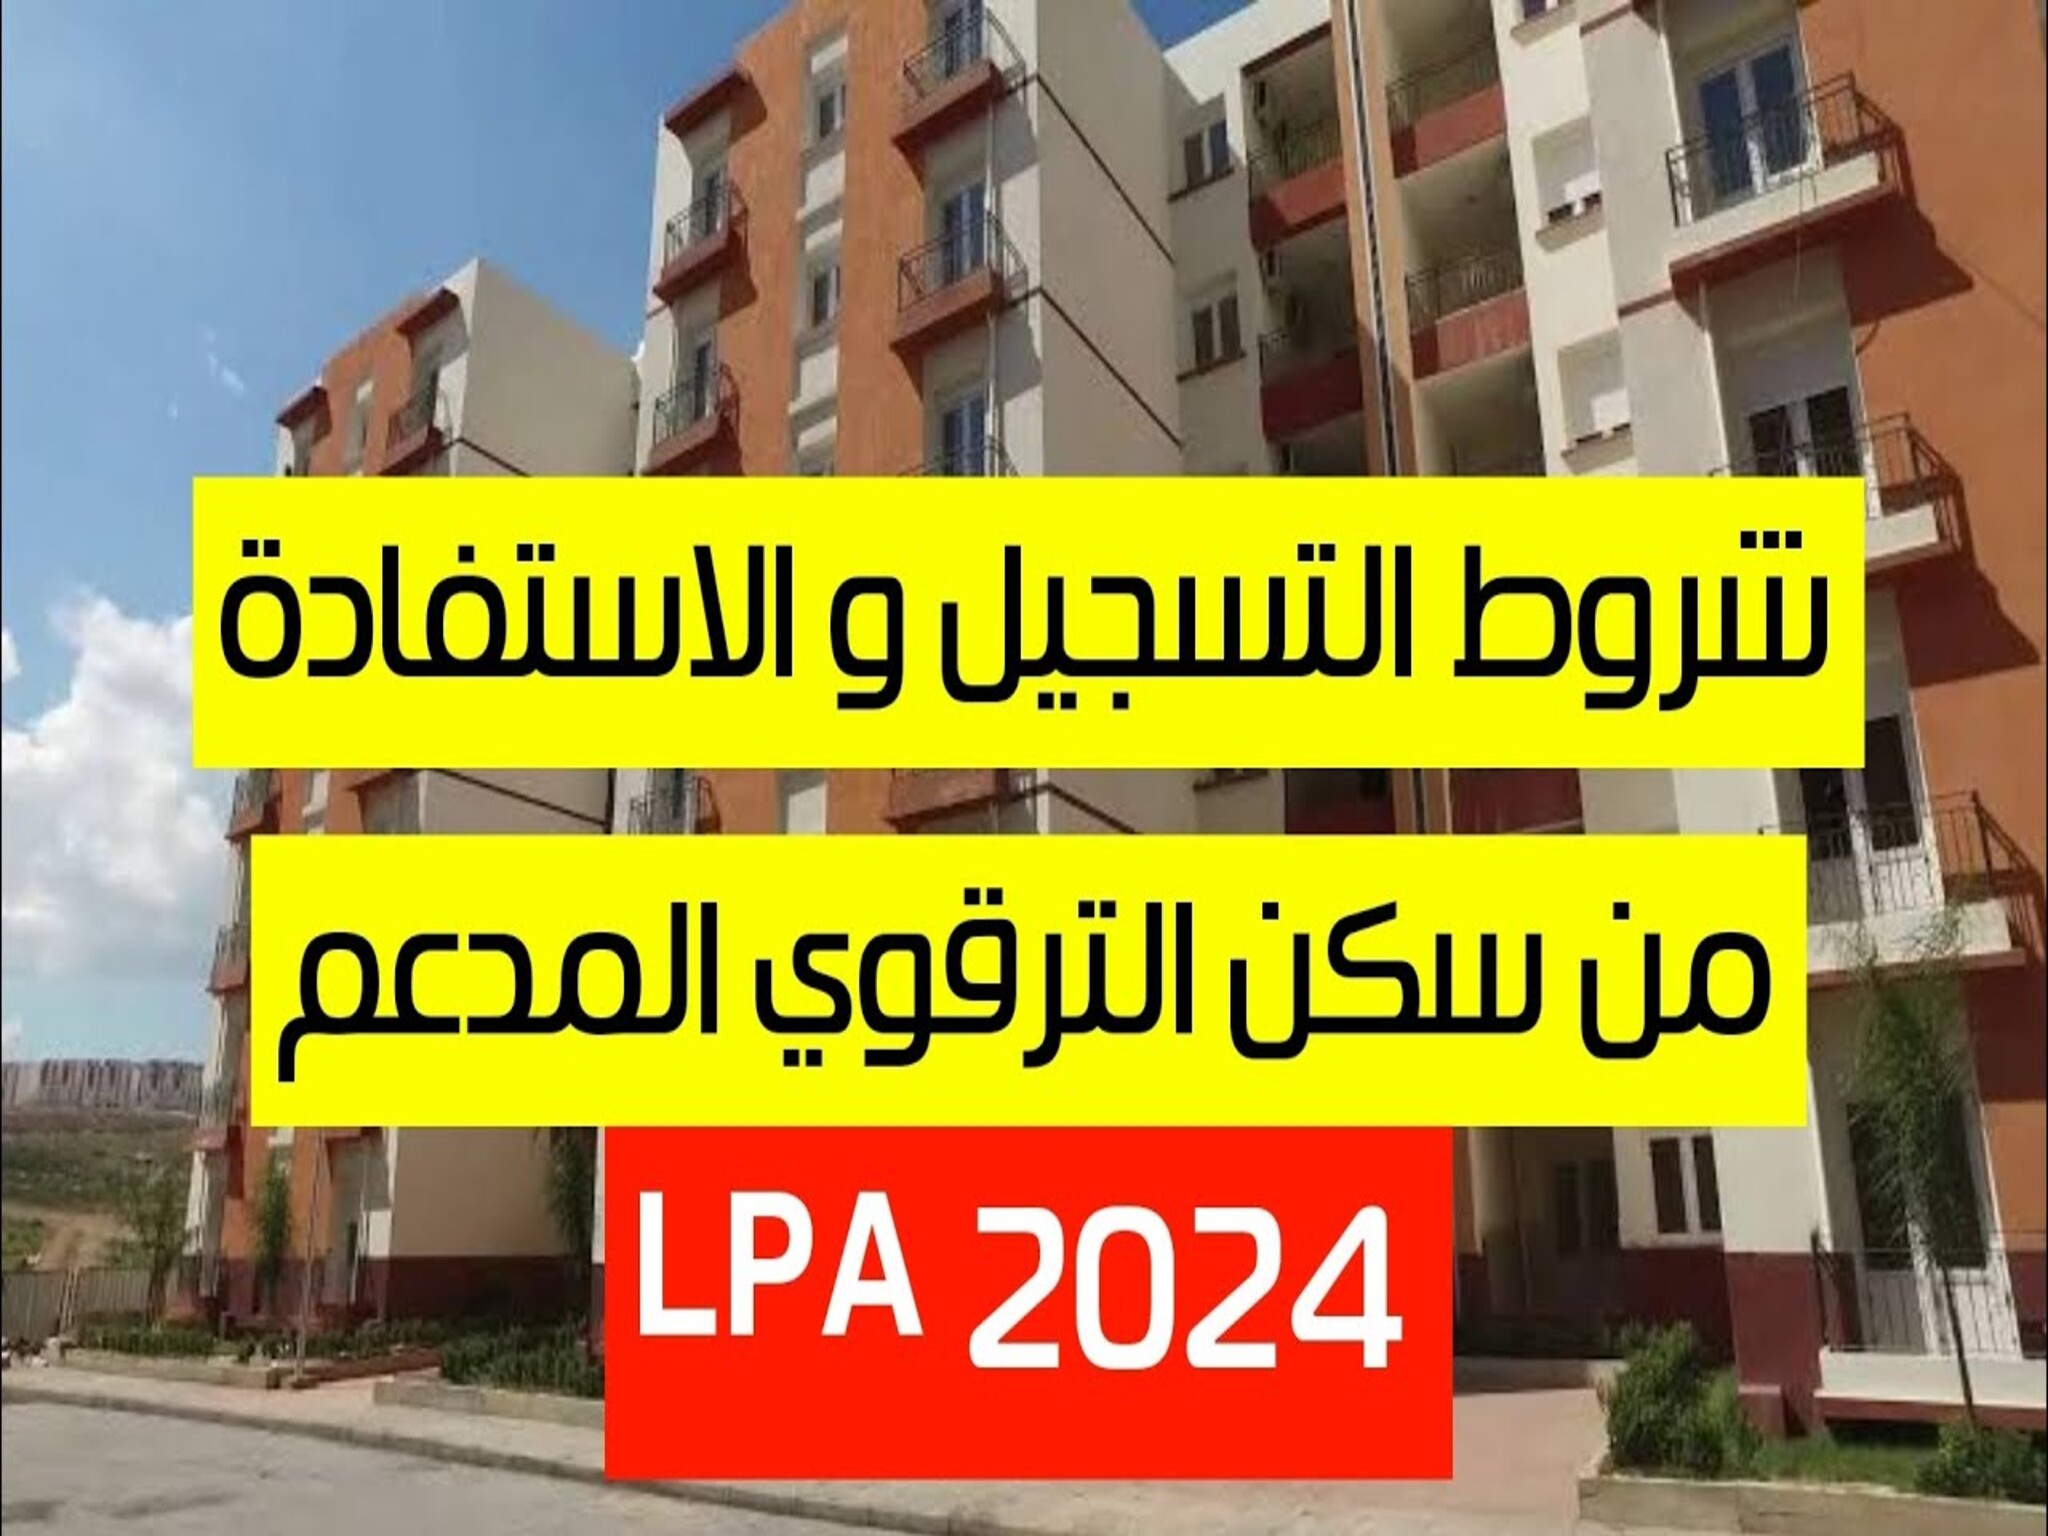 تعرف علي شروط التسجيل والأستفادة من السكن الترقوي المدعم LPA ) 2024 ) بالجزائر 